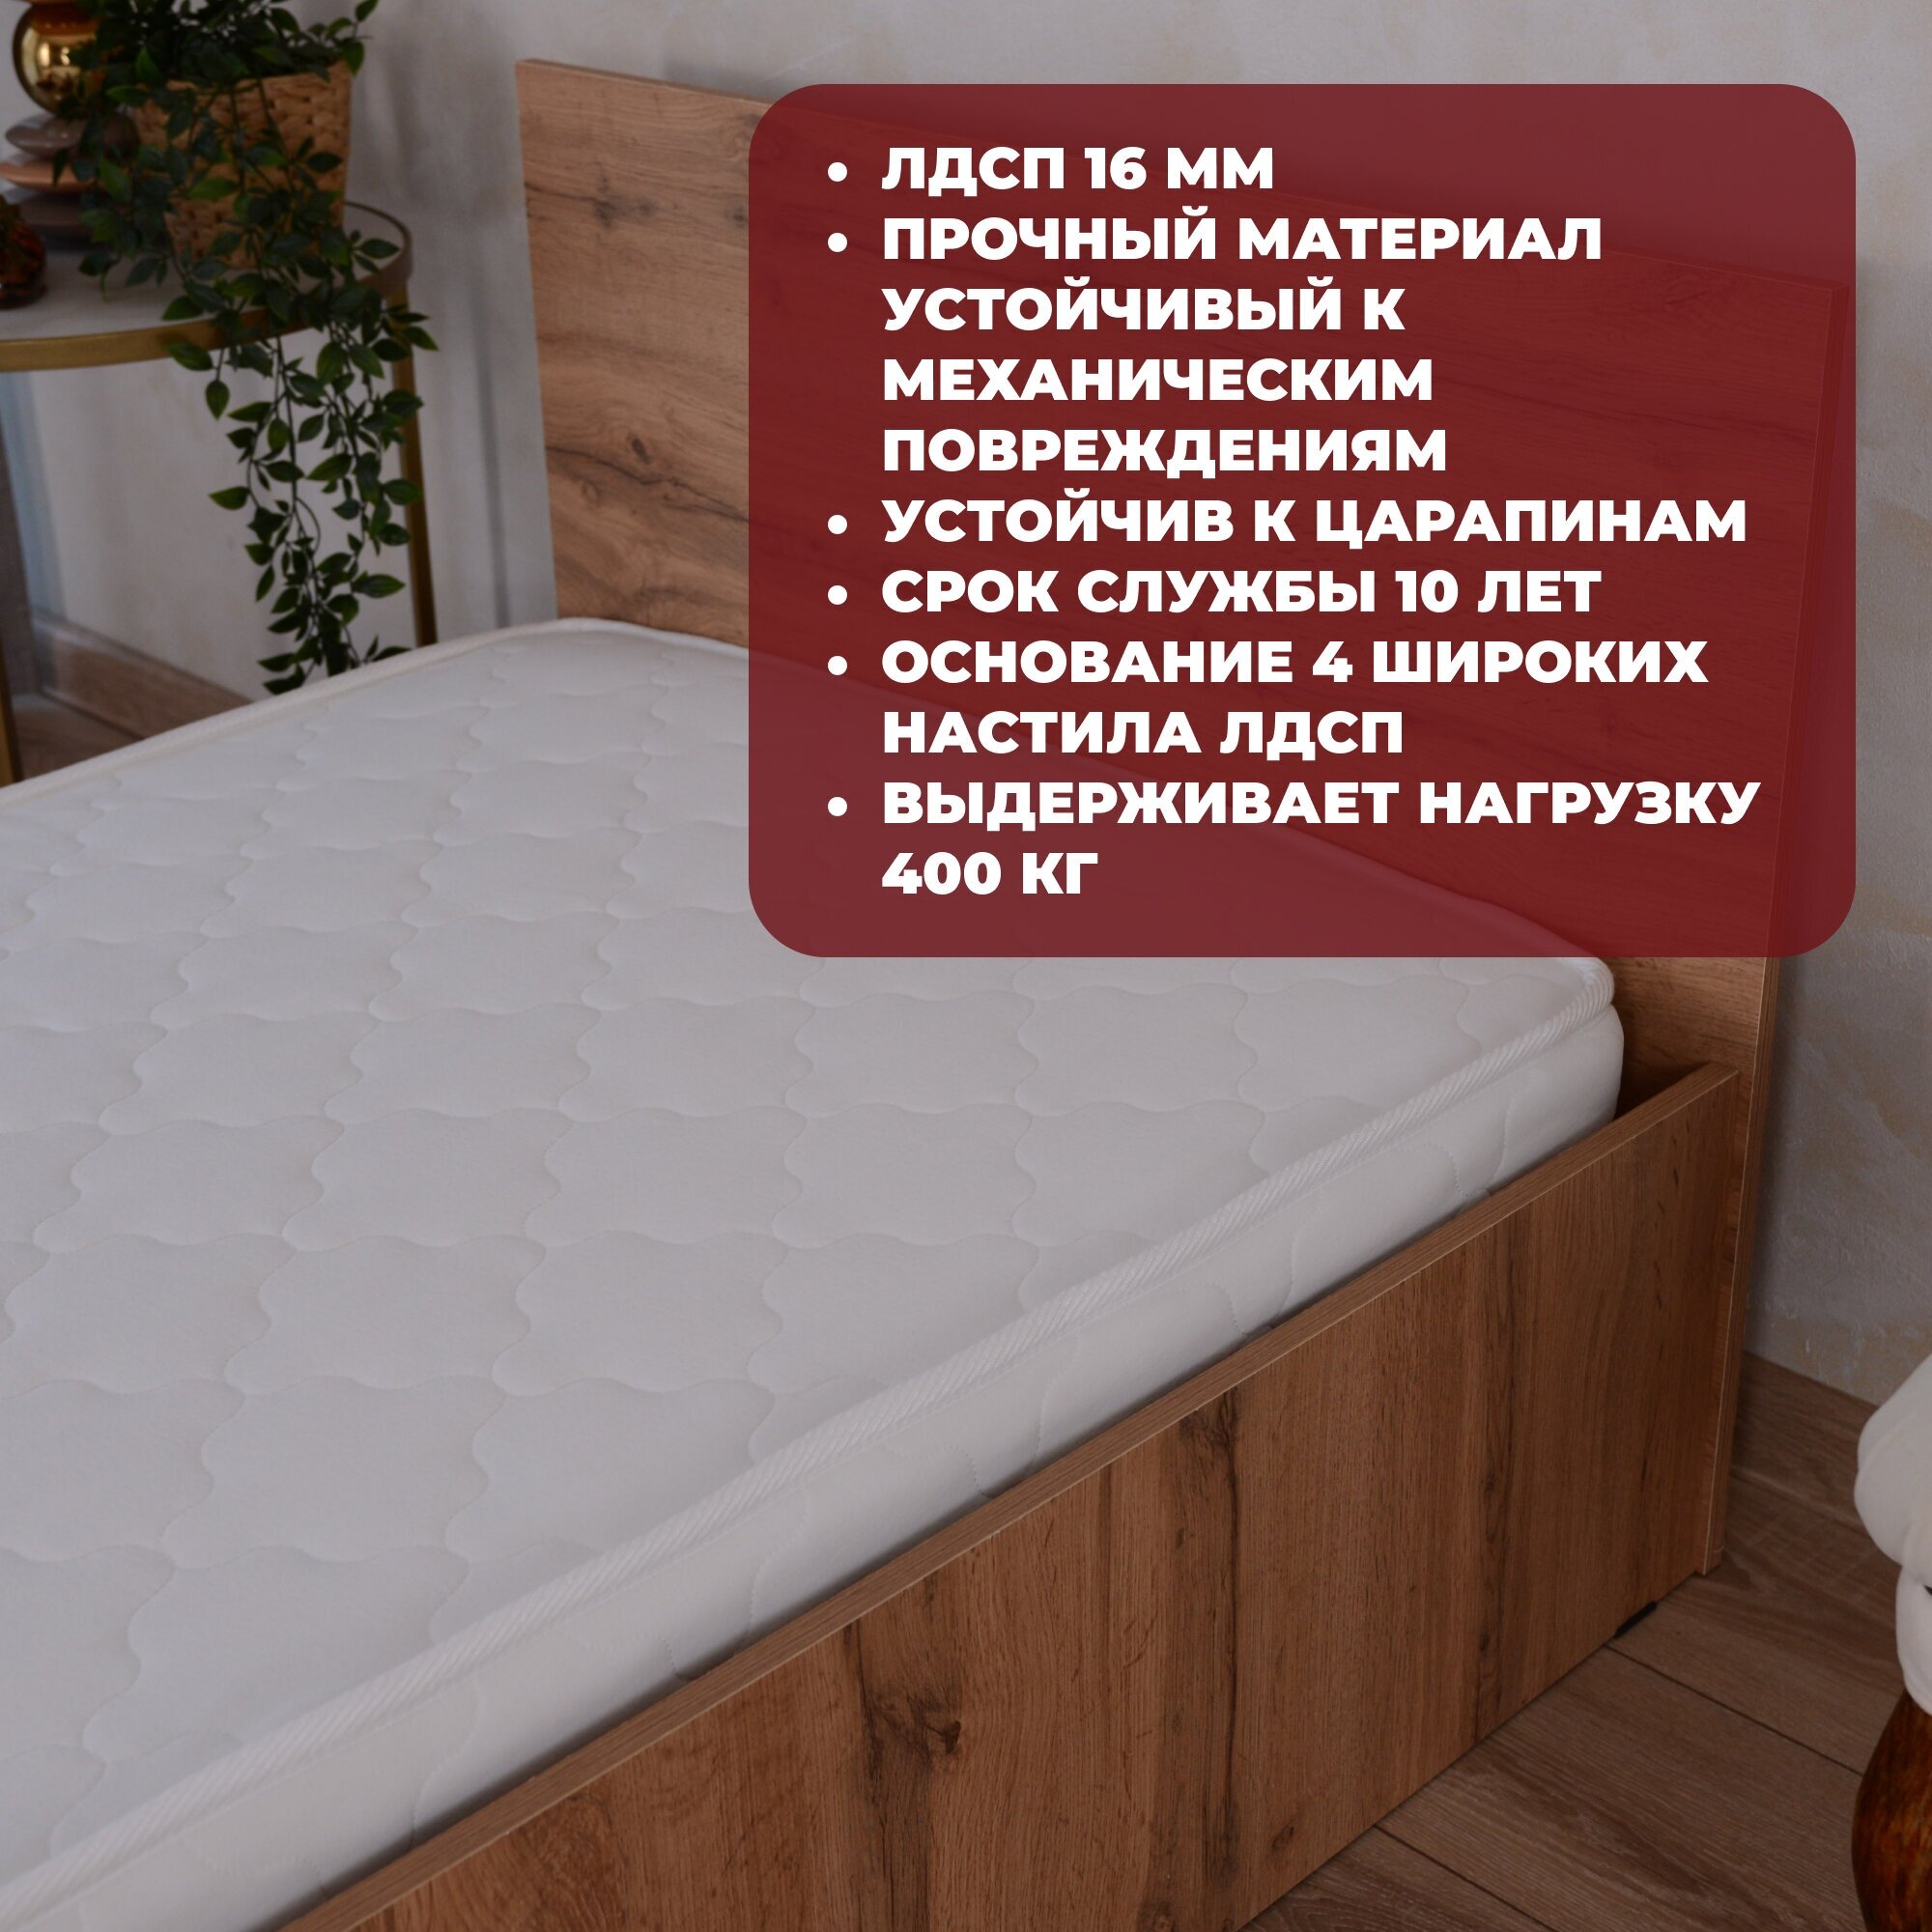 Односпальная кровать Парма с матрасом Лайт, 80х200 см